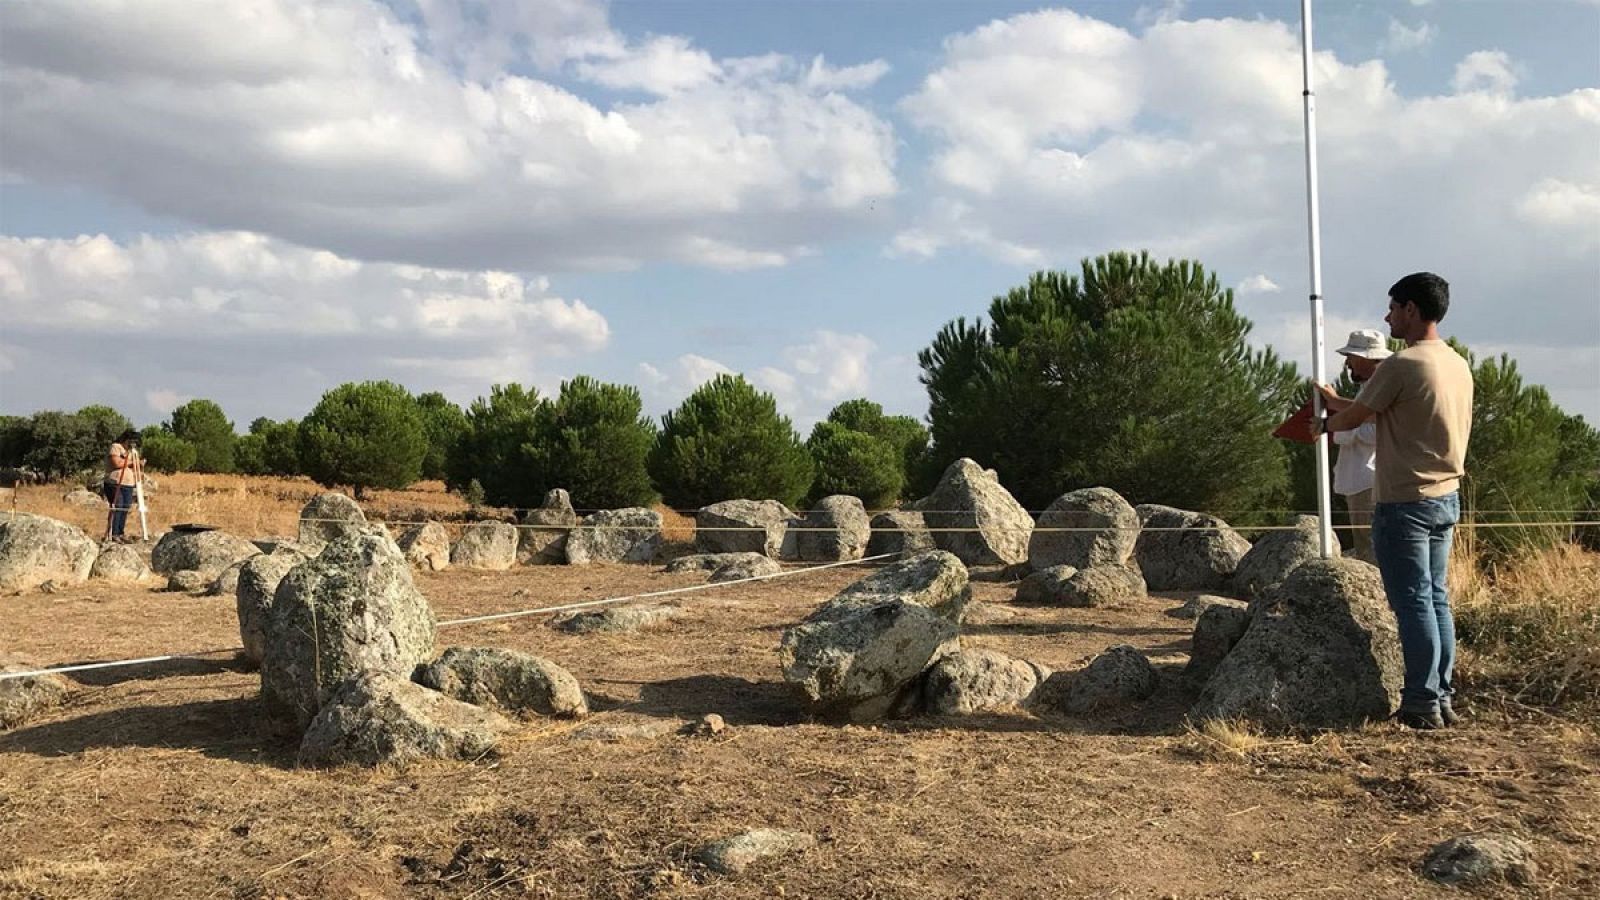 En Totanés, un pequeño pueblo de Toledo, han hallado un círculo de piedras, con una estructura muy similar a la del mítico Stonehenge del sur de Inglaterra. Se encontró por casualidad. Es de finales del Neolítico y ahora lo estudia el grupo de arqueó